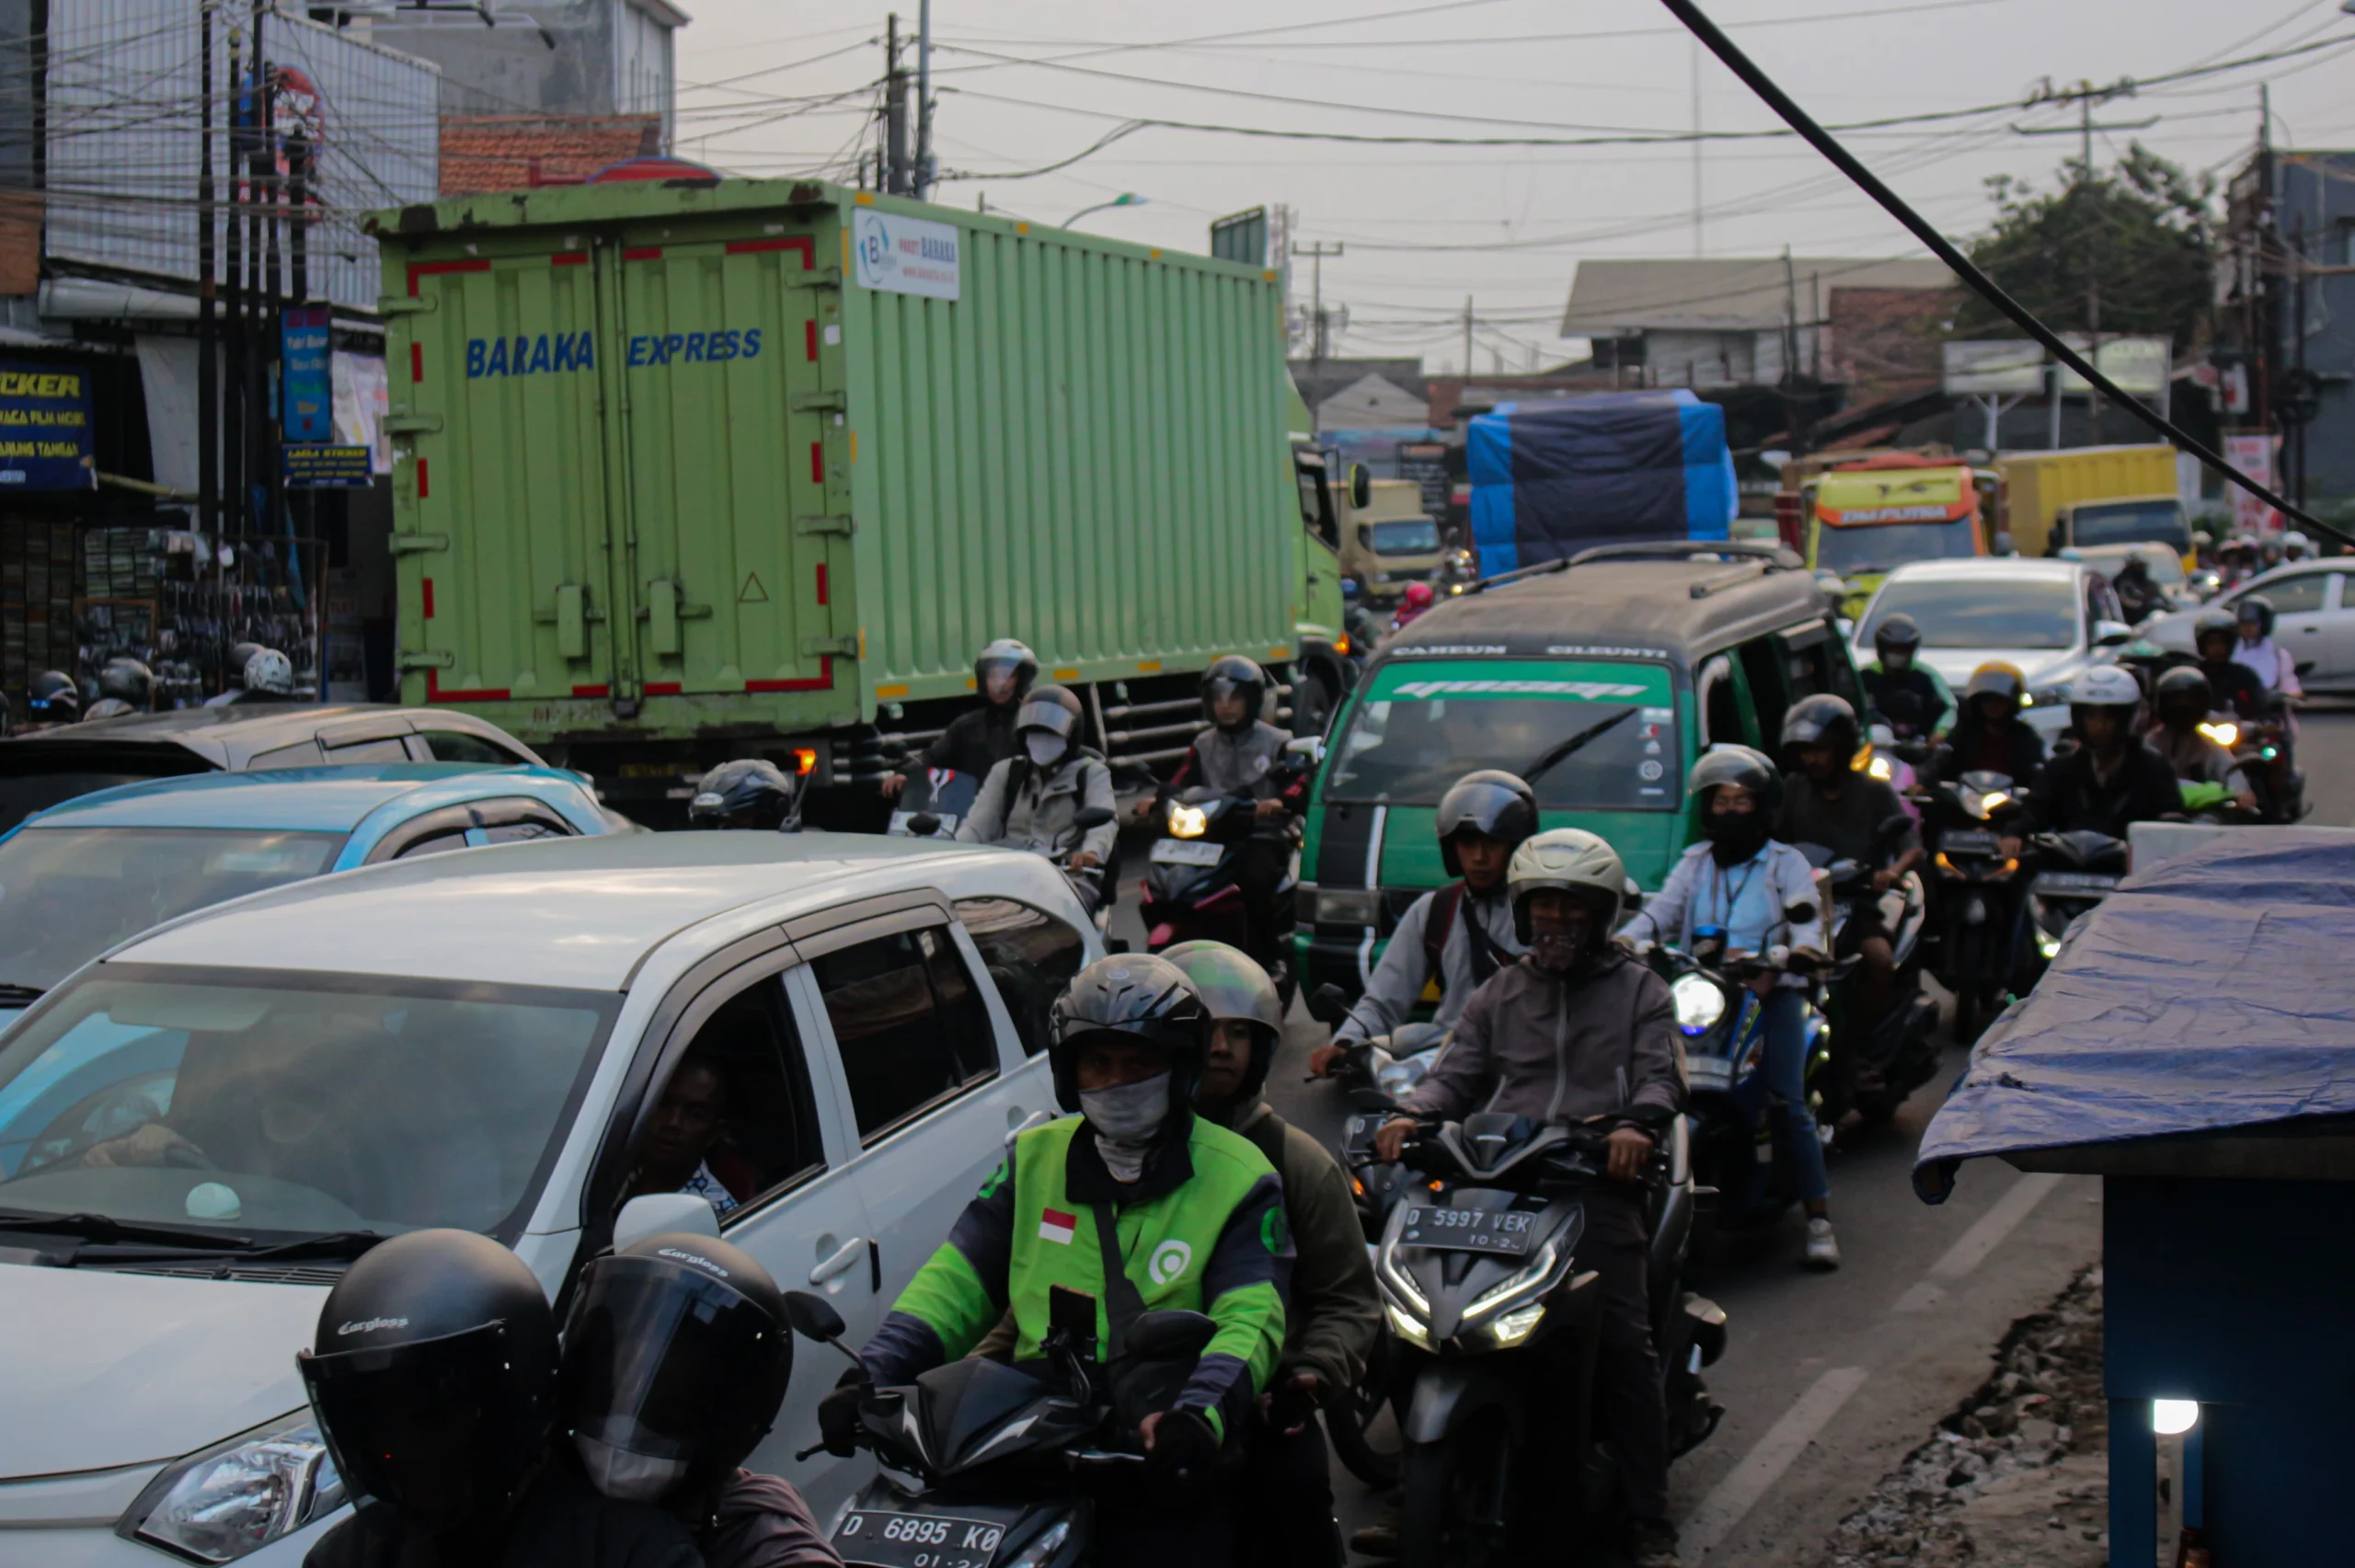 Arus lalu lintas di Jalan Raya Cinunuk, Kabupaten Bandung kerap dipadati kendaraan hingga menimbulkan kemacetan. (Pandu Muslim/Jabar Ekspres)